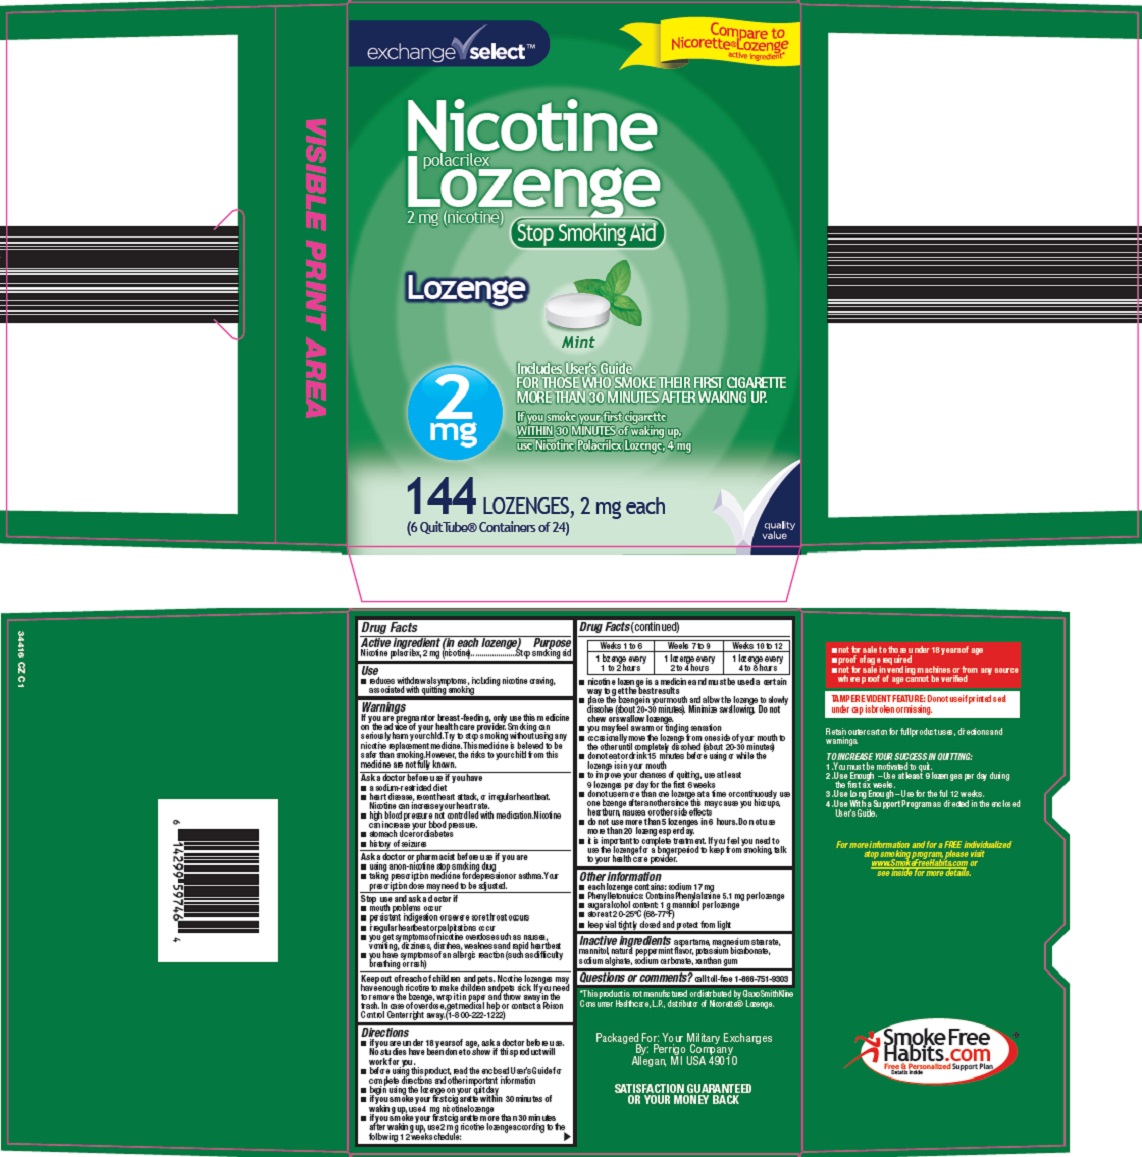 nicotine-lozenge-image